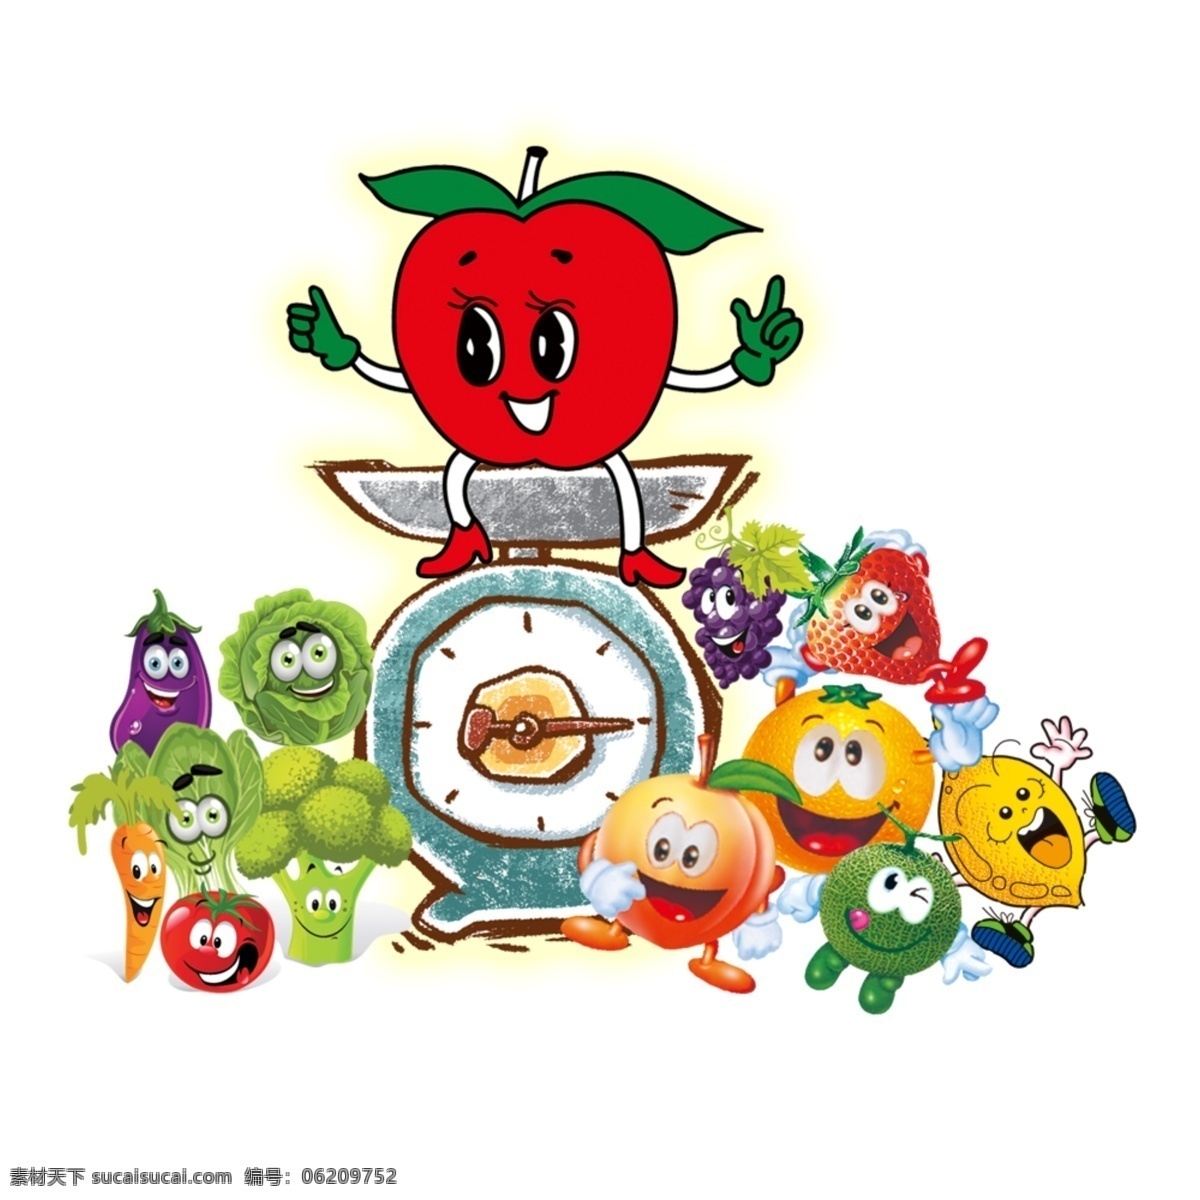 卡通水果集合 卡通水果 水果卡通 卡通蔬菜 蔬菜卡通 卡通 蔬菜水果卡通 蔬菜水果 包装设计